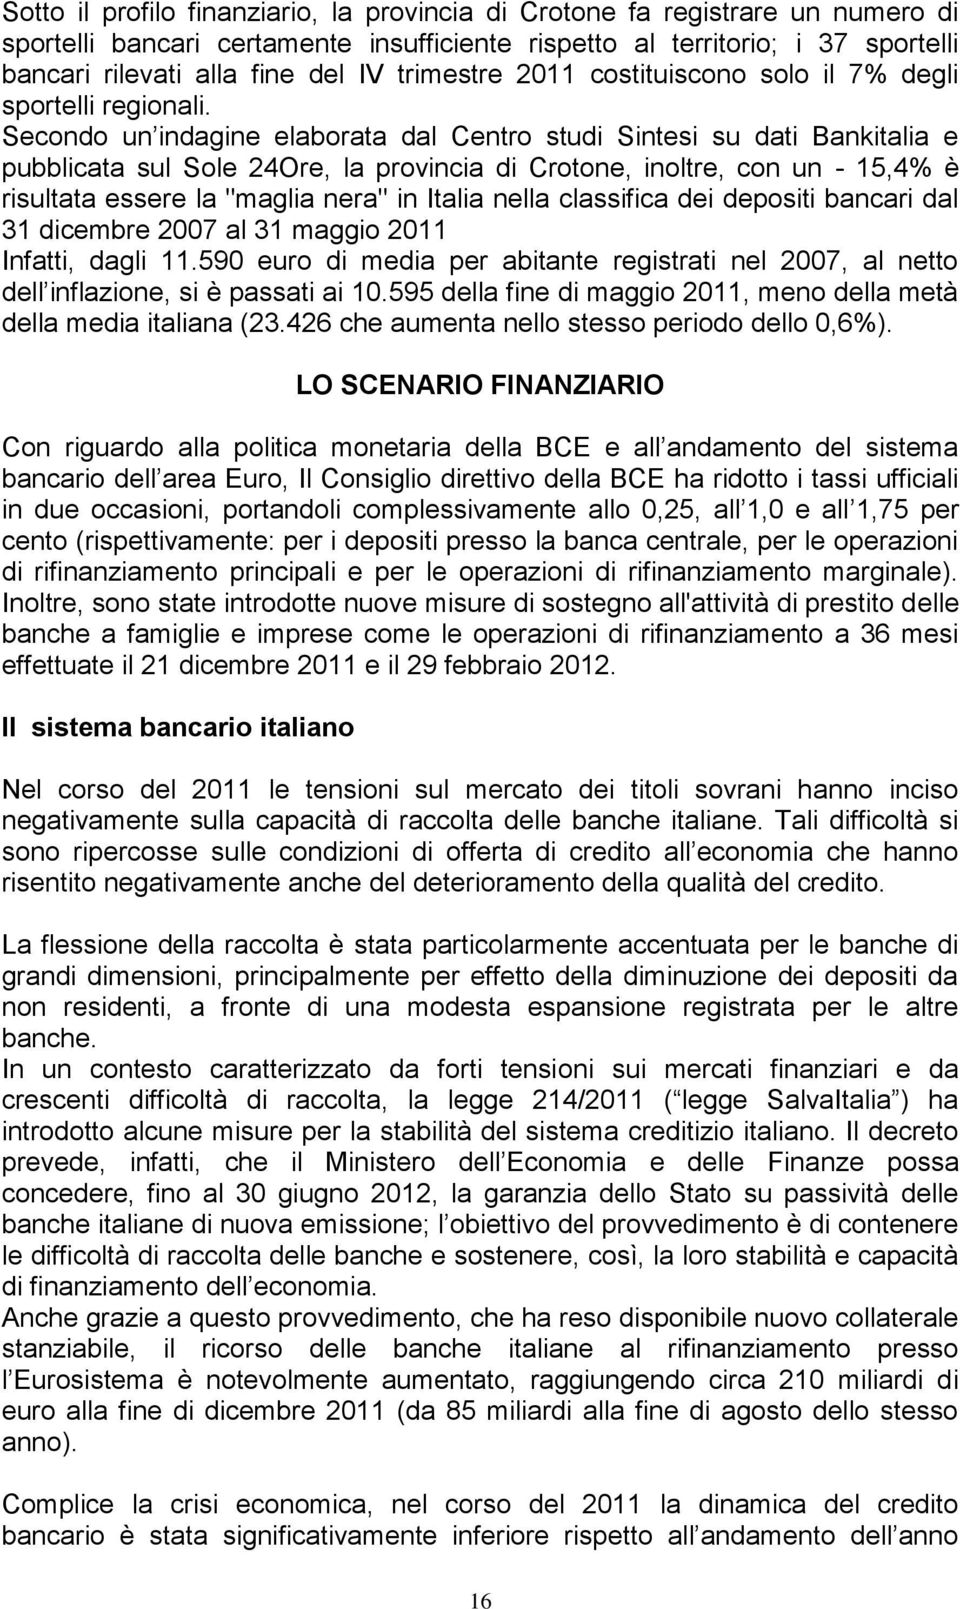 Secondo un indagine elaborata dal Centro studi Sintesi su dati Bankitalia e pubblicata sul Sole 24Ore, la provincia di Crotone, inoltre, con un - 15,4% è risultata essere la "maglia nera" in Italia